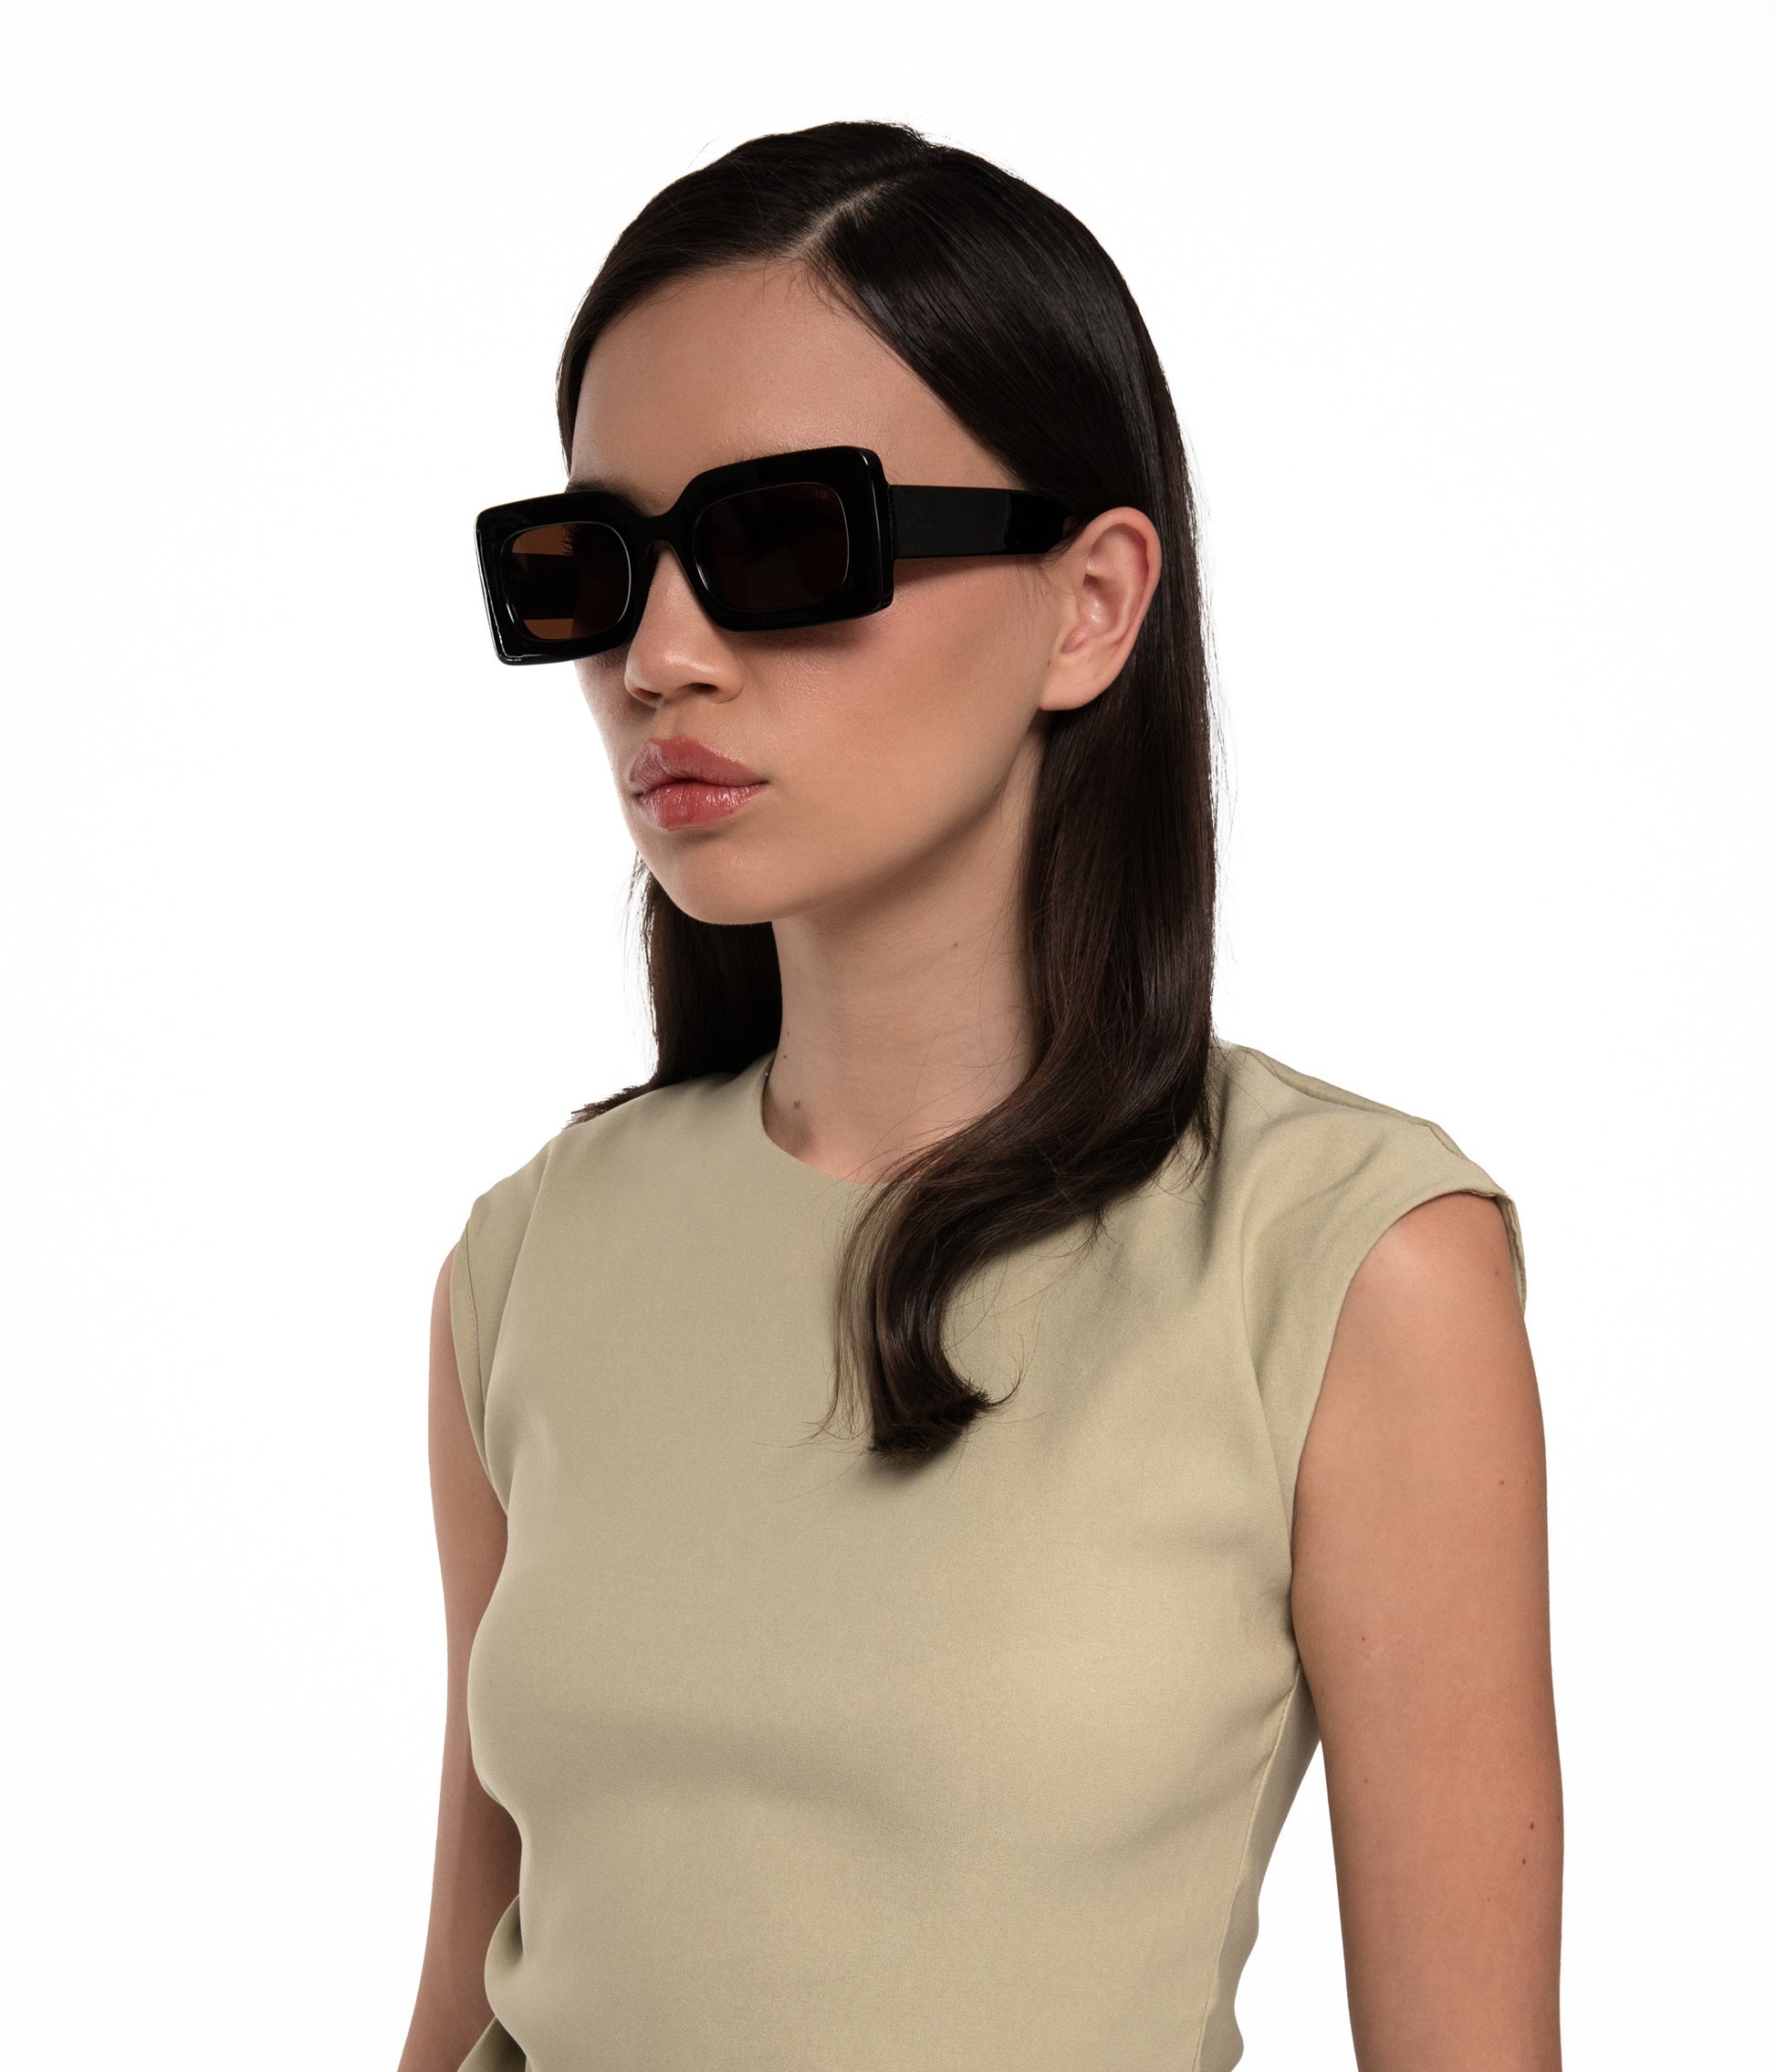 TITO Rectangle Sunglasses | Color: Black - variant::black